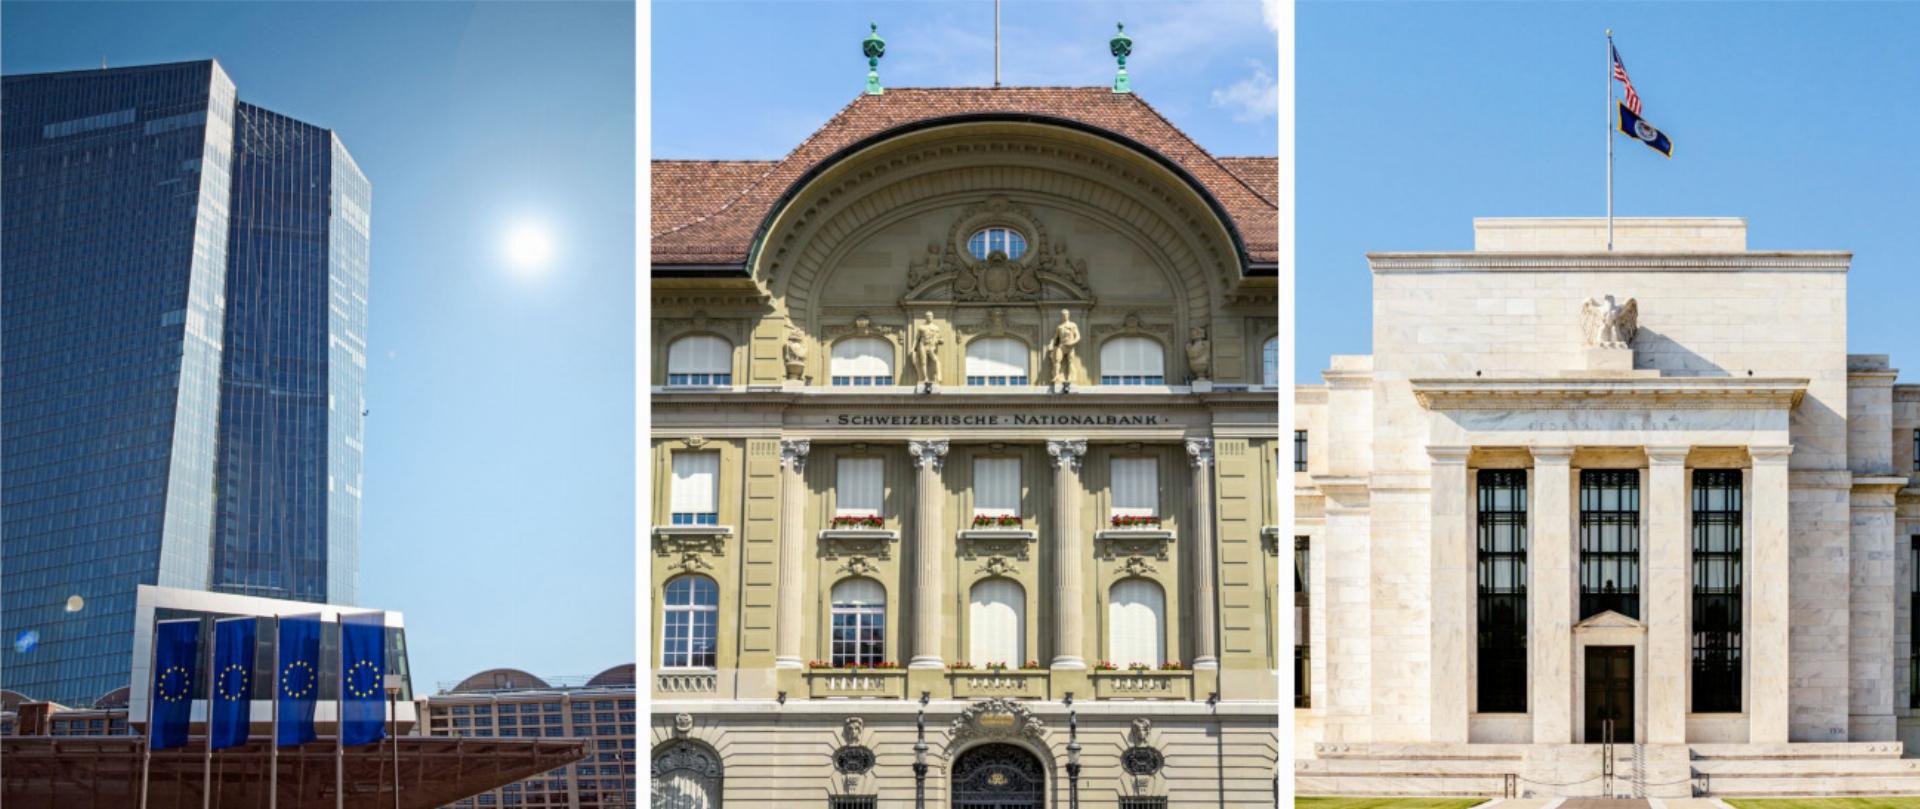 Zentralbanken vereint im Kampf gegen die Inflation (v.l.): Der Hauptsitz der Europäischen Zentralbank (EZB) in Frankfurt am Main, die Berner Filiale der Schweizerischen Nationalbank (SNB) und das Hauptportal des Federal Reserve Board Building in W ashington D.C., Sitz der mächtigen US-Notenbank FED. BILDER (V.L.): BJÖRN BUXBAUM-CONRADI, DOGANMESUT, TANARCH / STOCK.ADOBE.COM